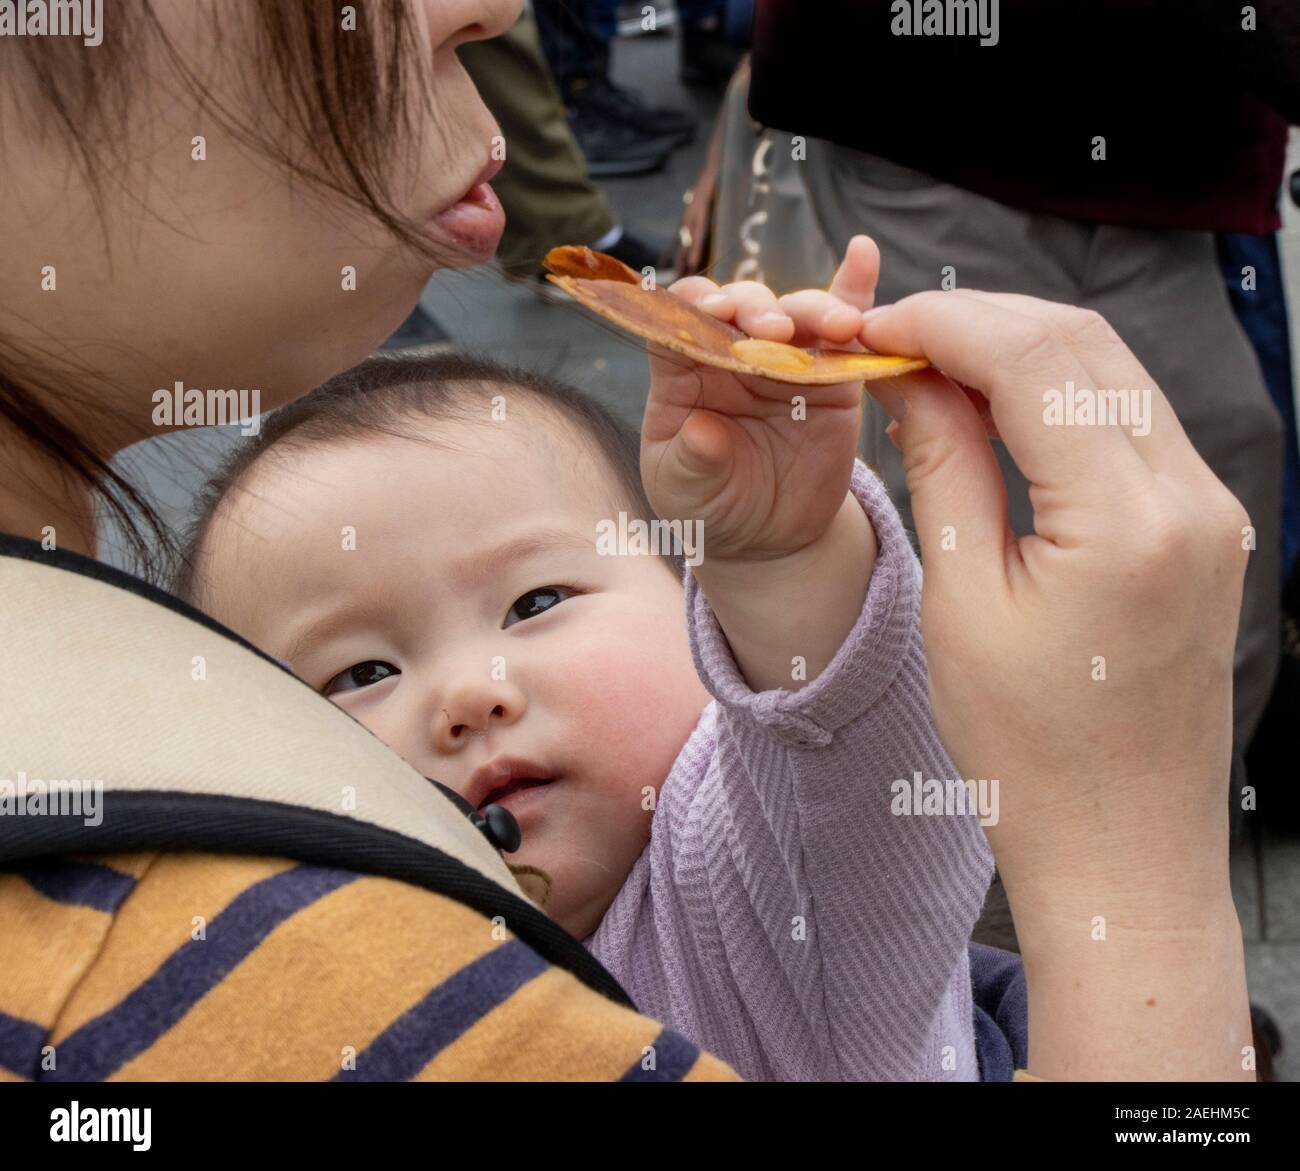 Bébé d'atteindre pour la nourriture que la mère mange, Tokyo, Japon Banque D'Images